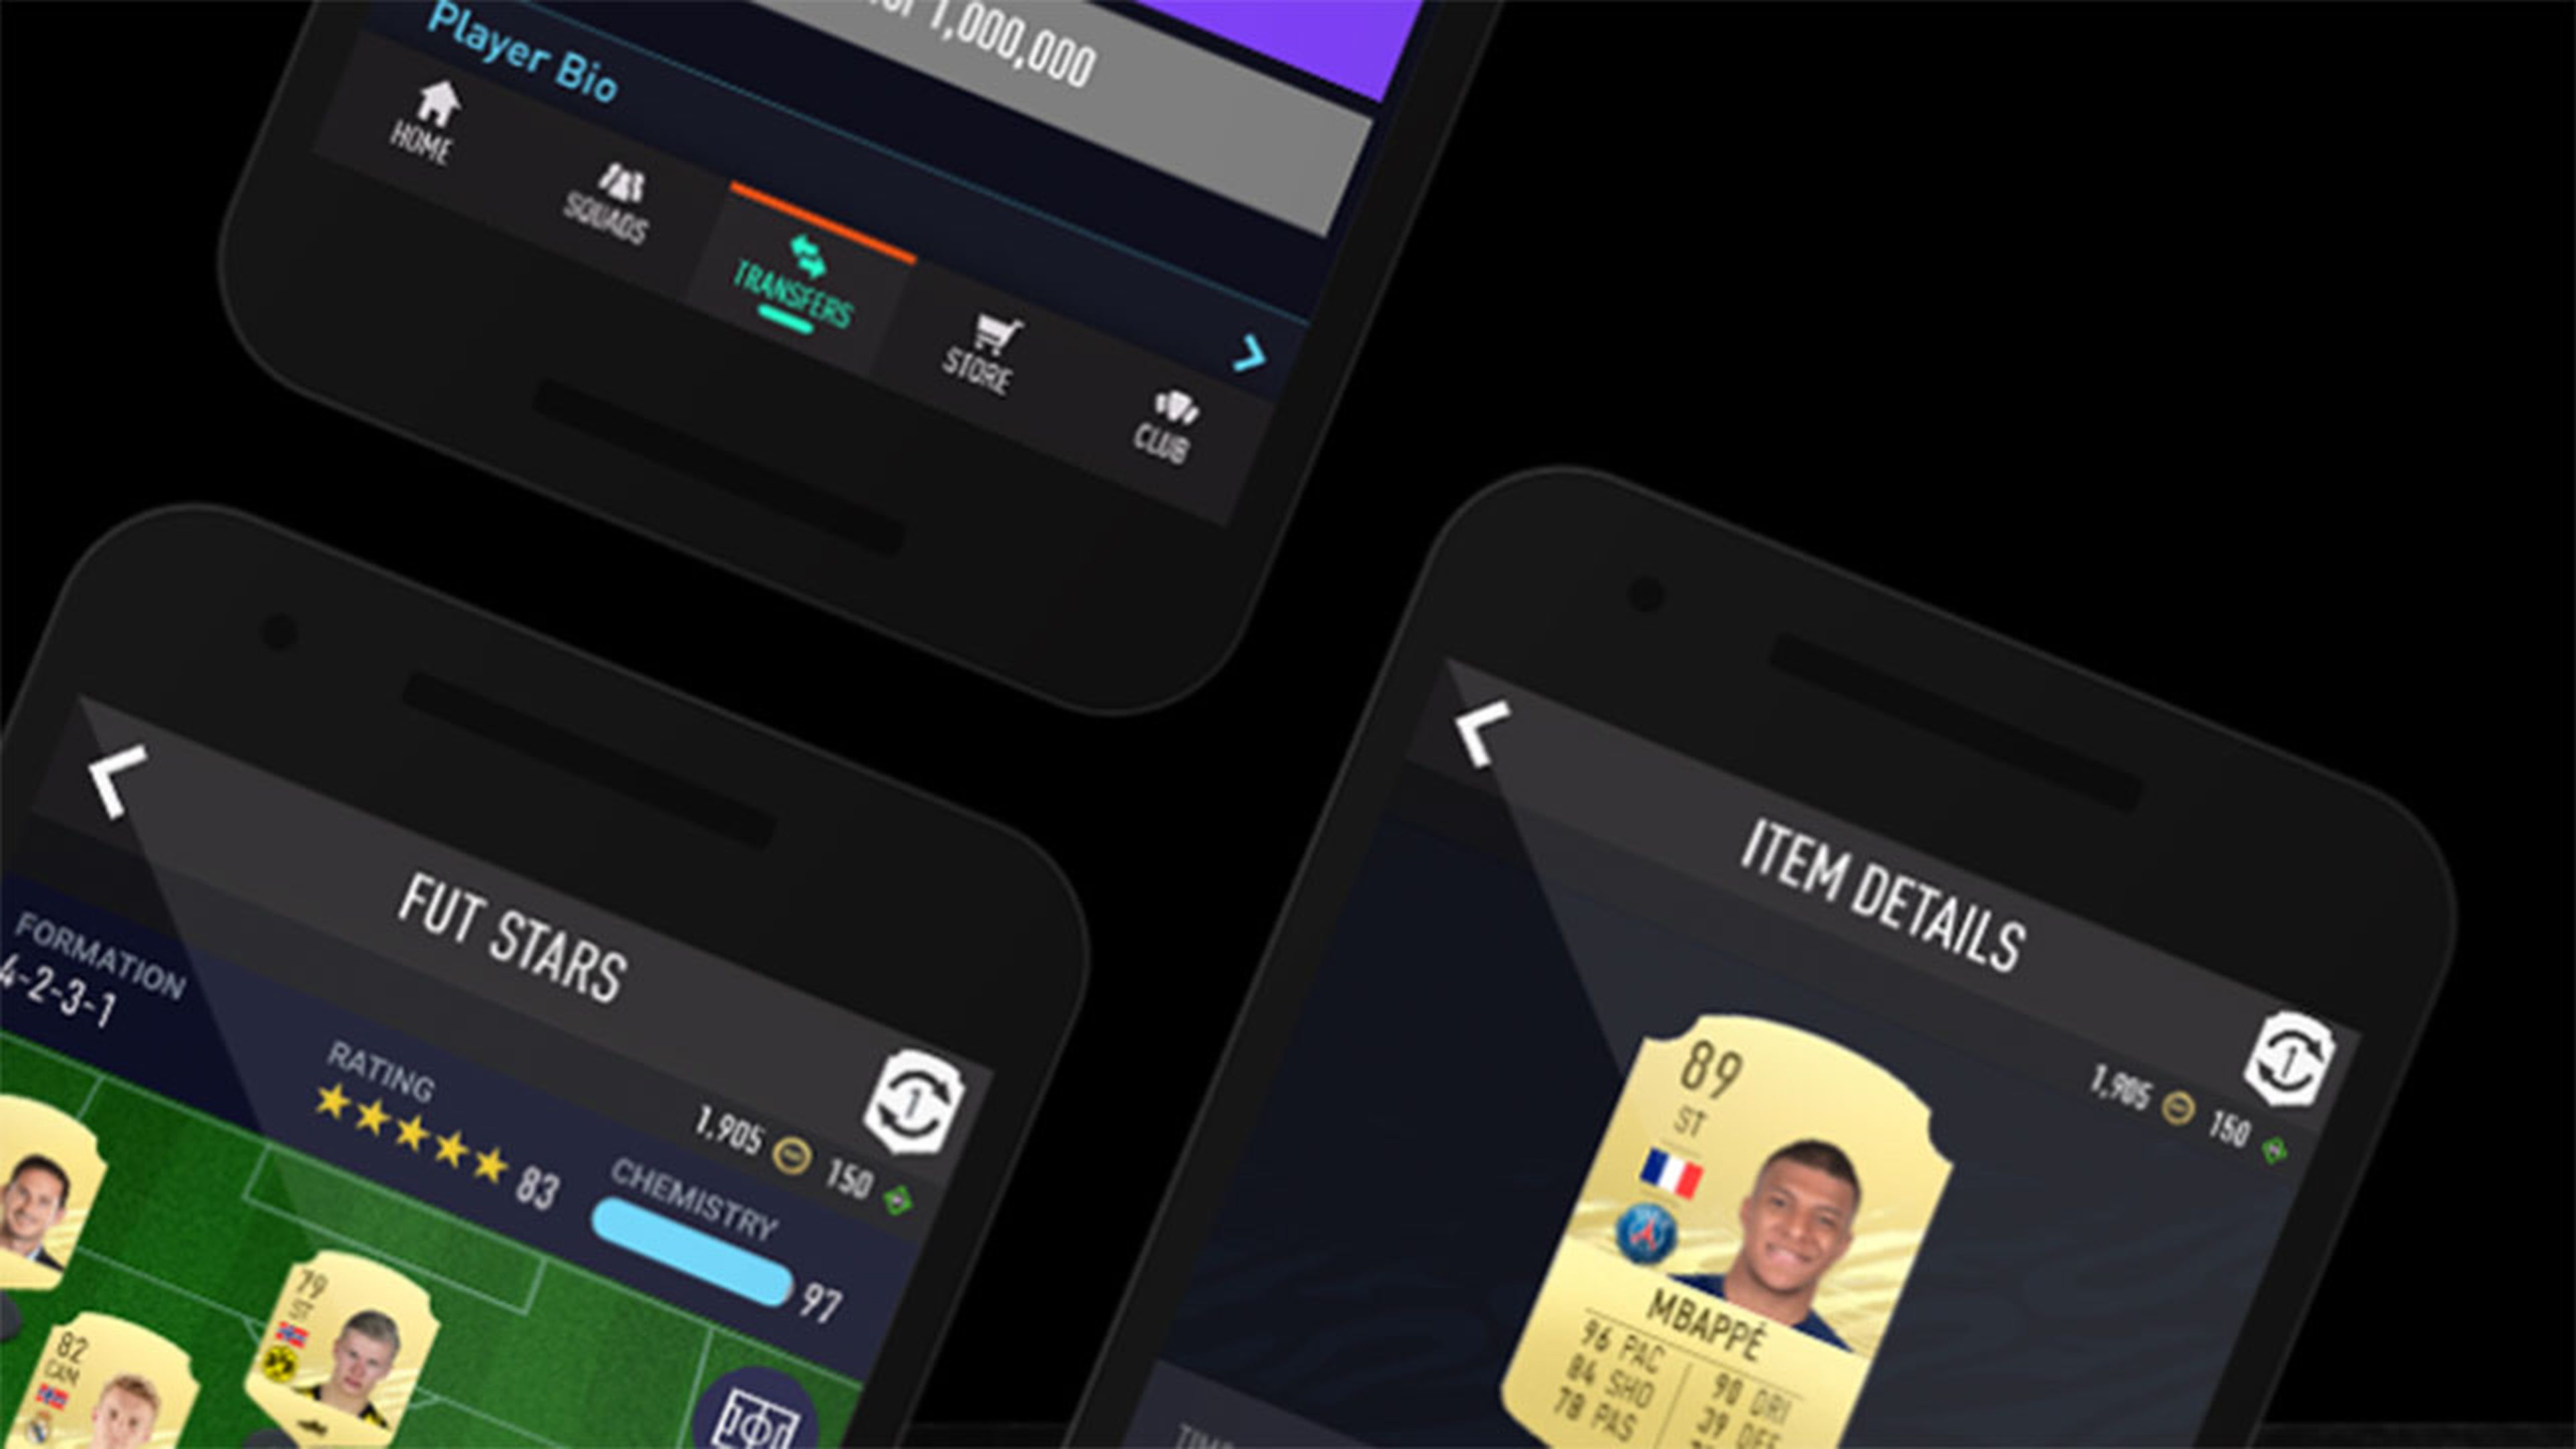 FIFA 21 web app